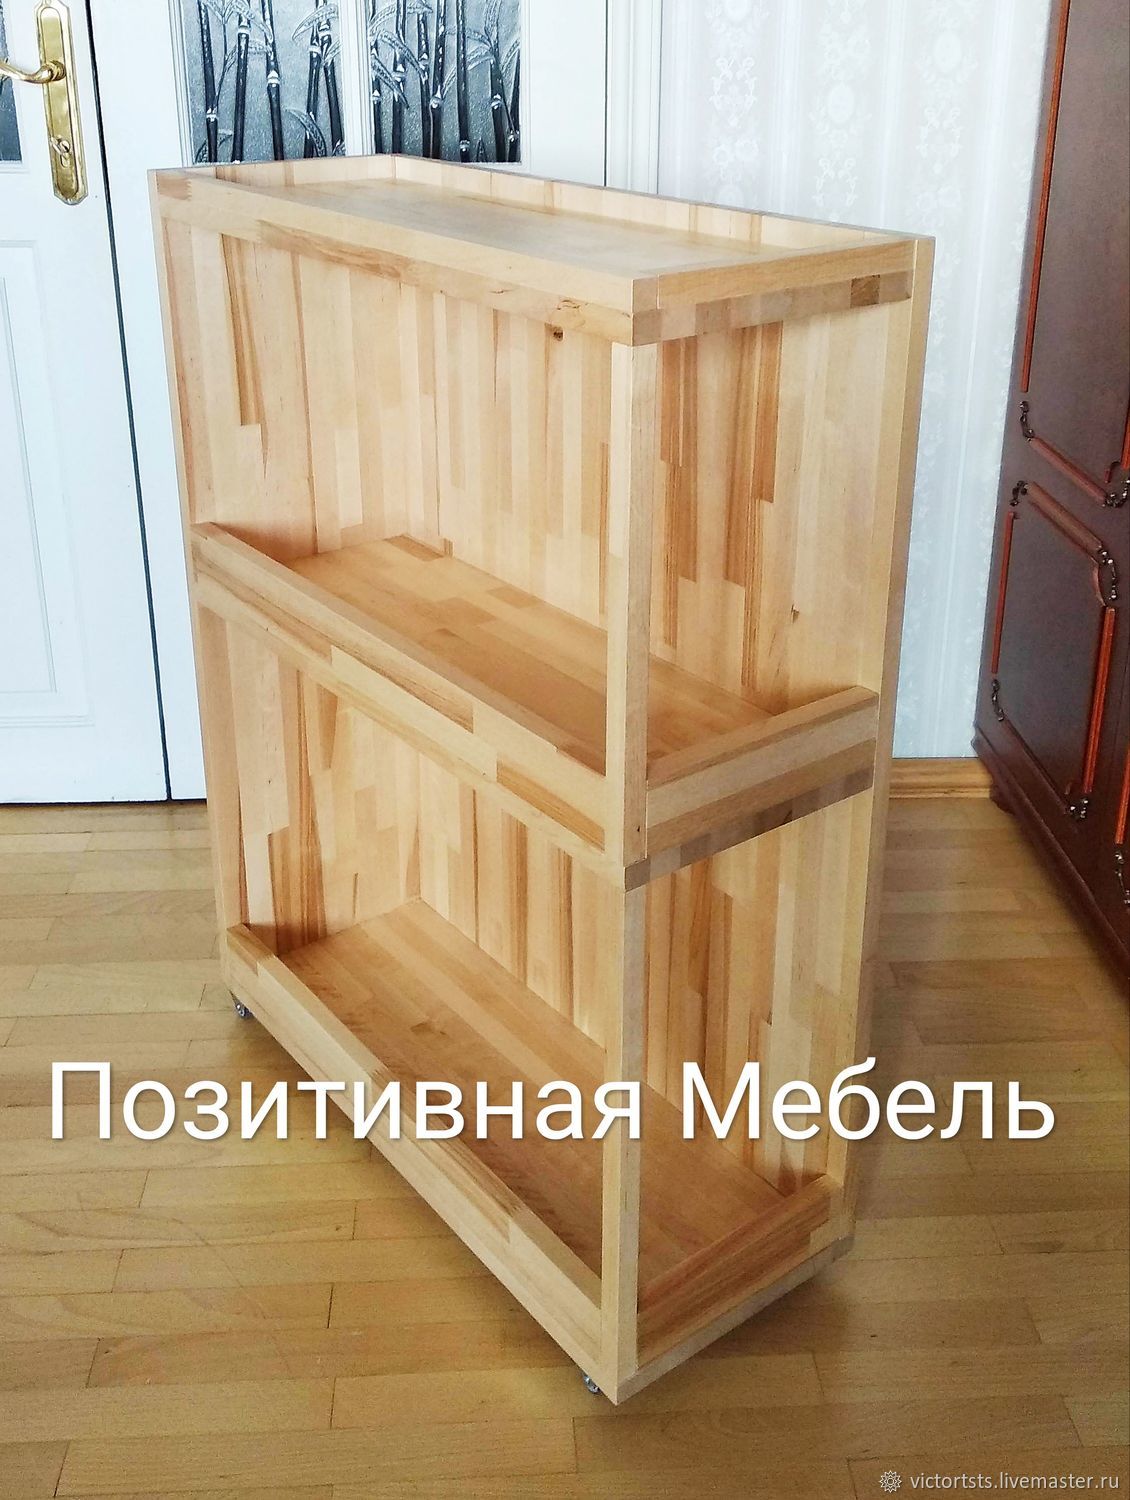 Купить металлический стеллаж в стиле лофт в Москве, стеллажи лофт из металла недорого: цена, фото